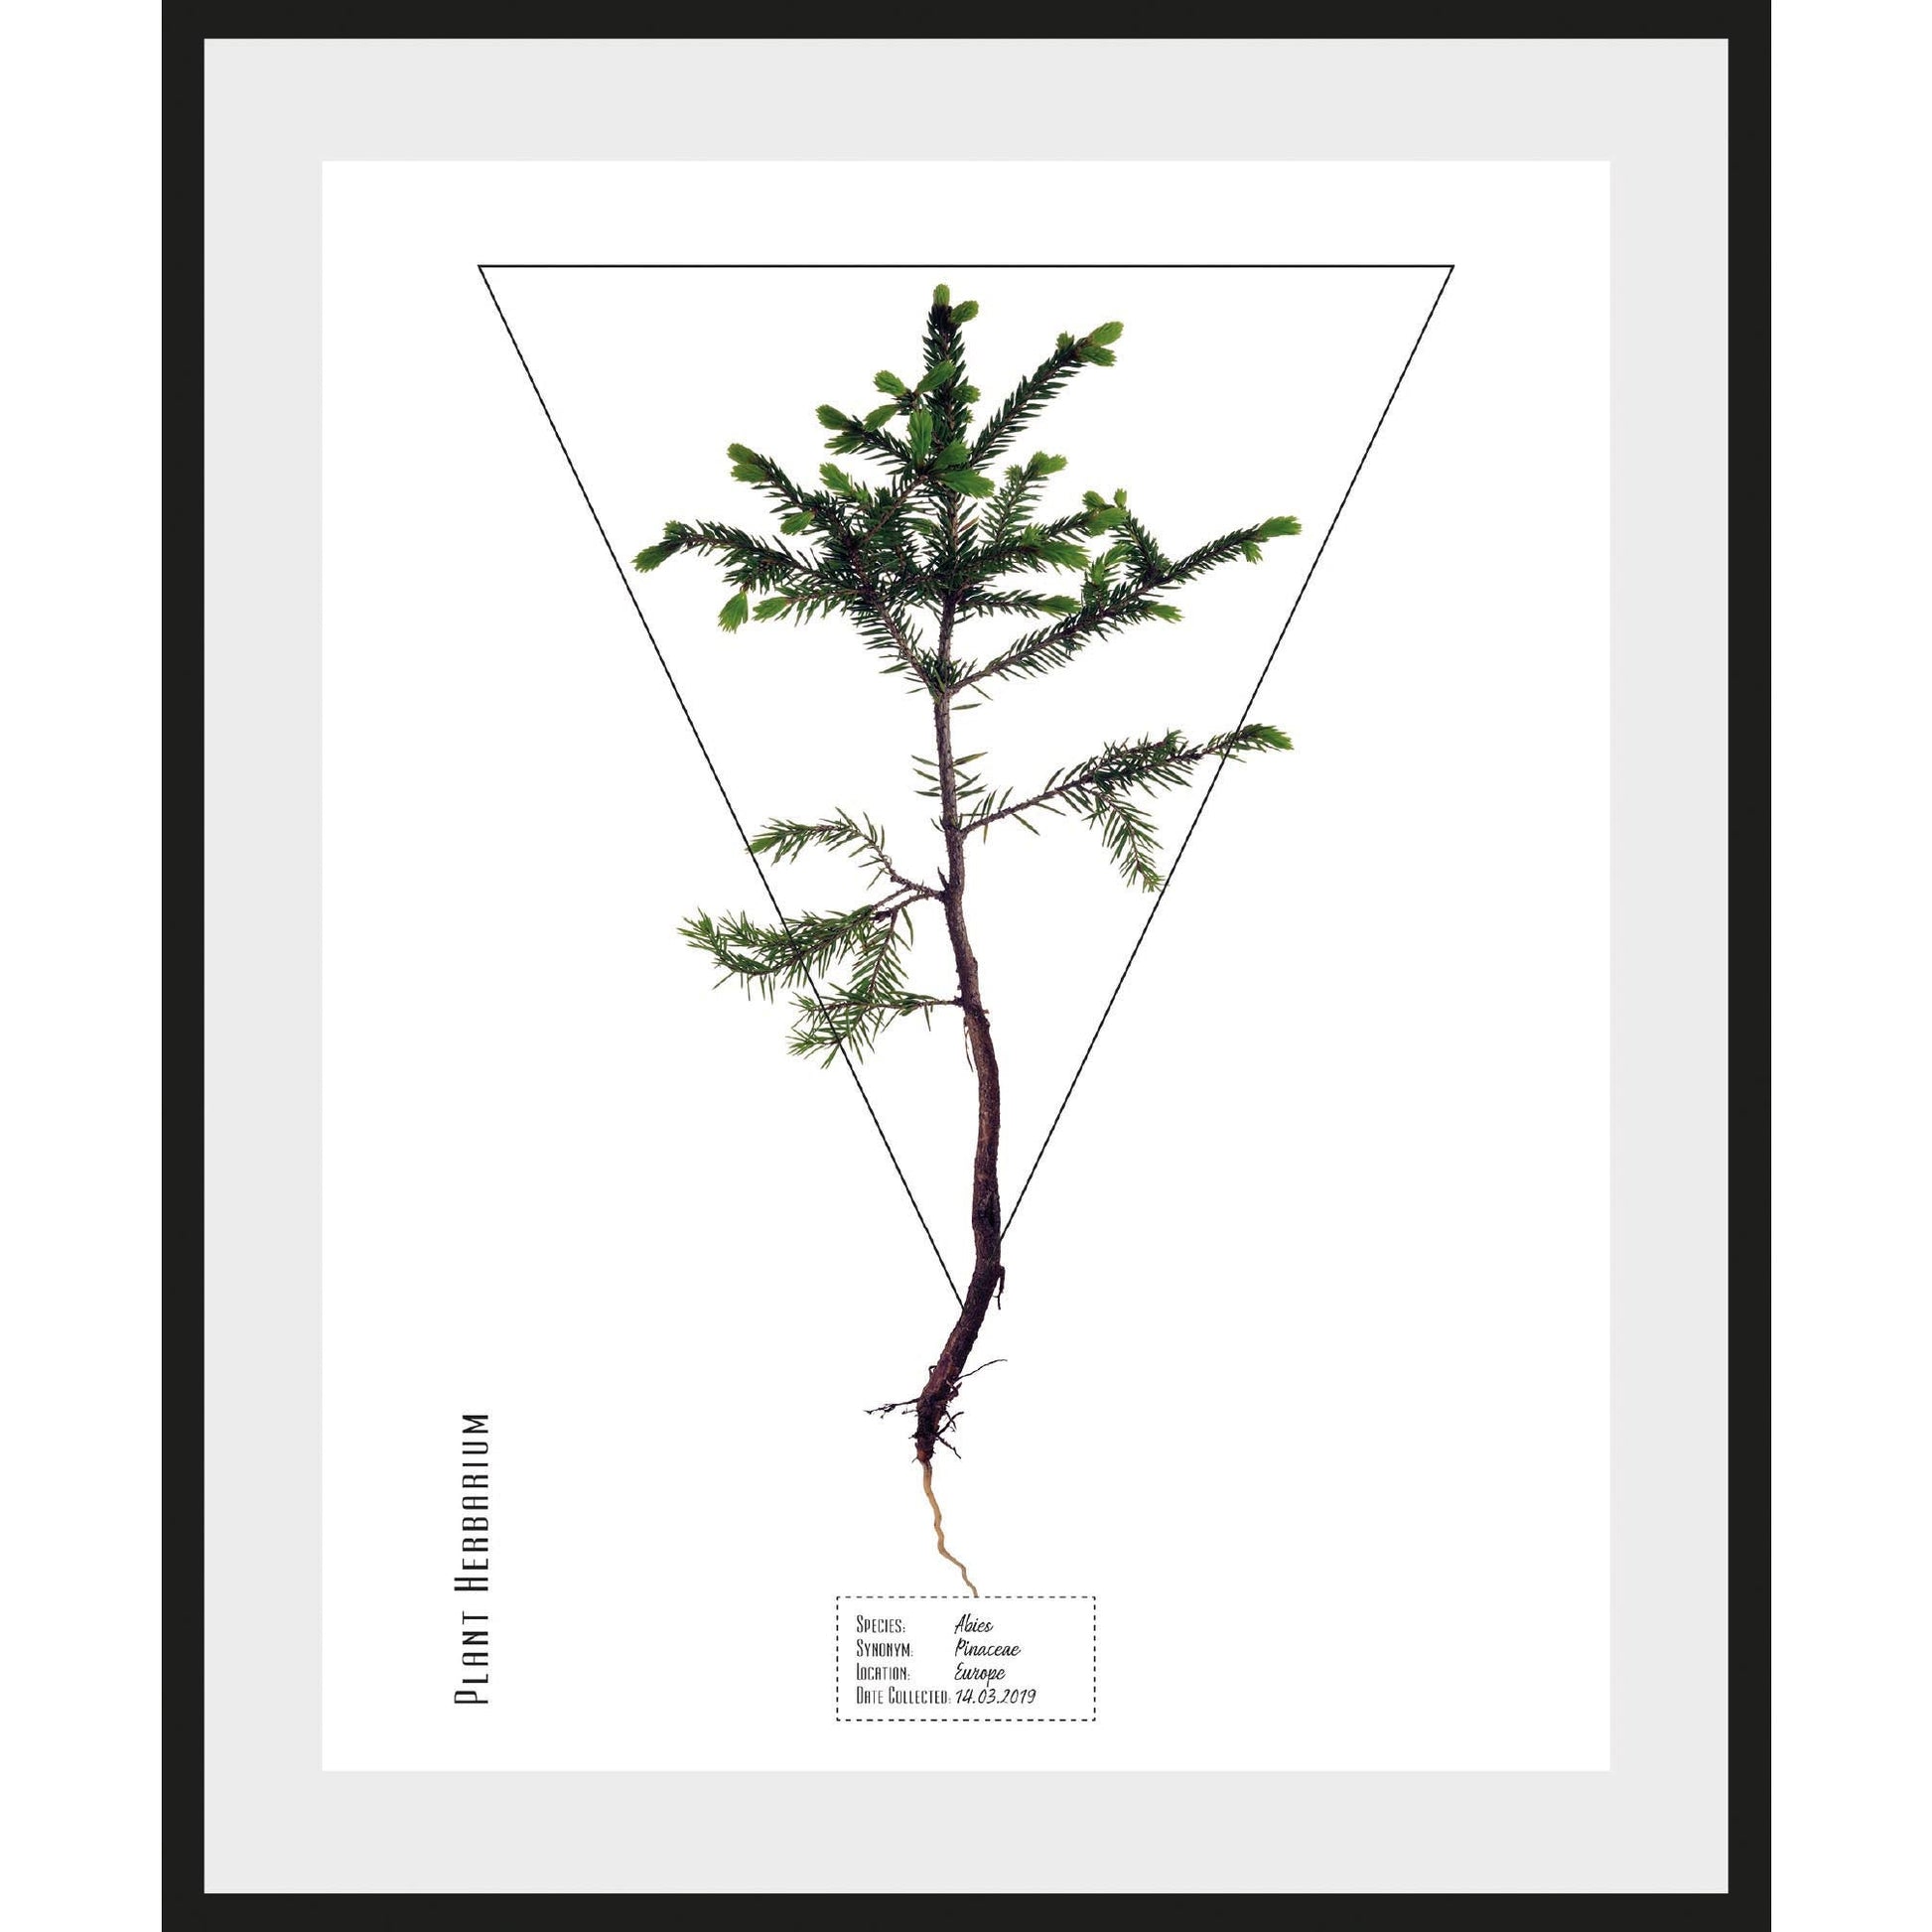 Rahmenbild - Pinaceae